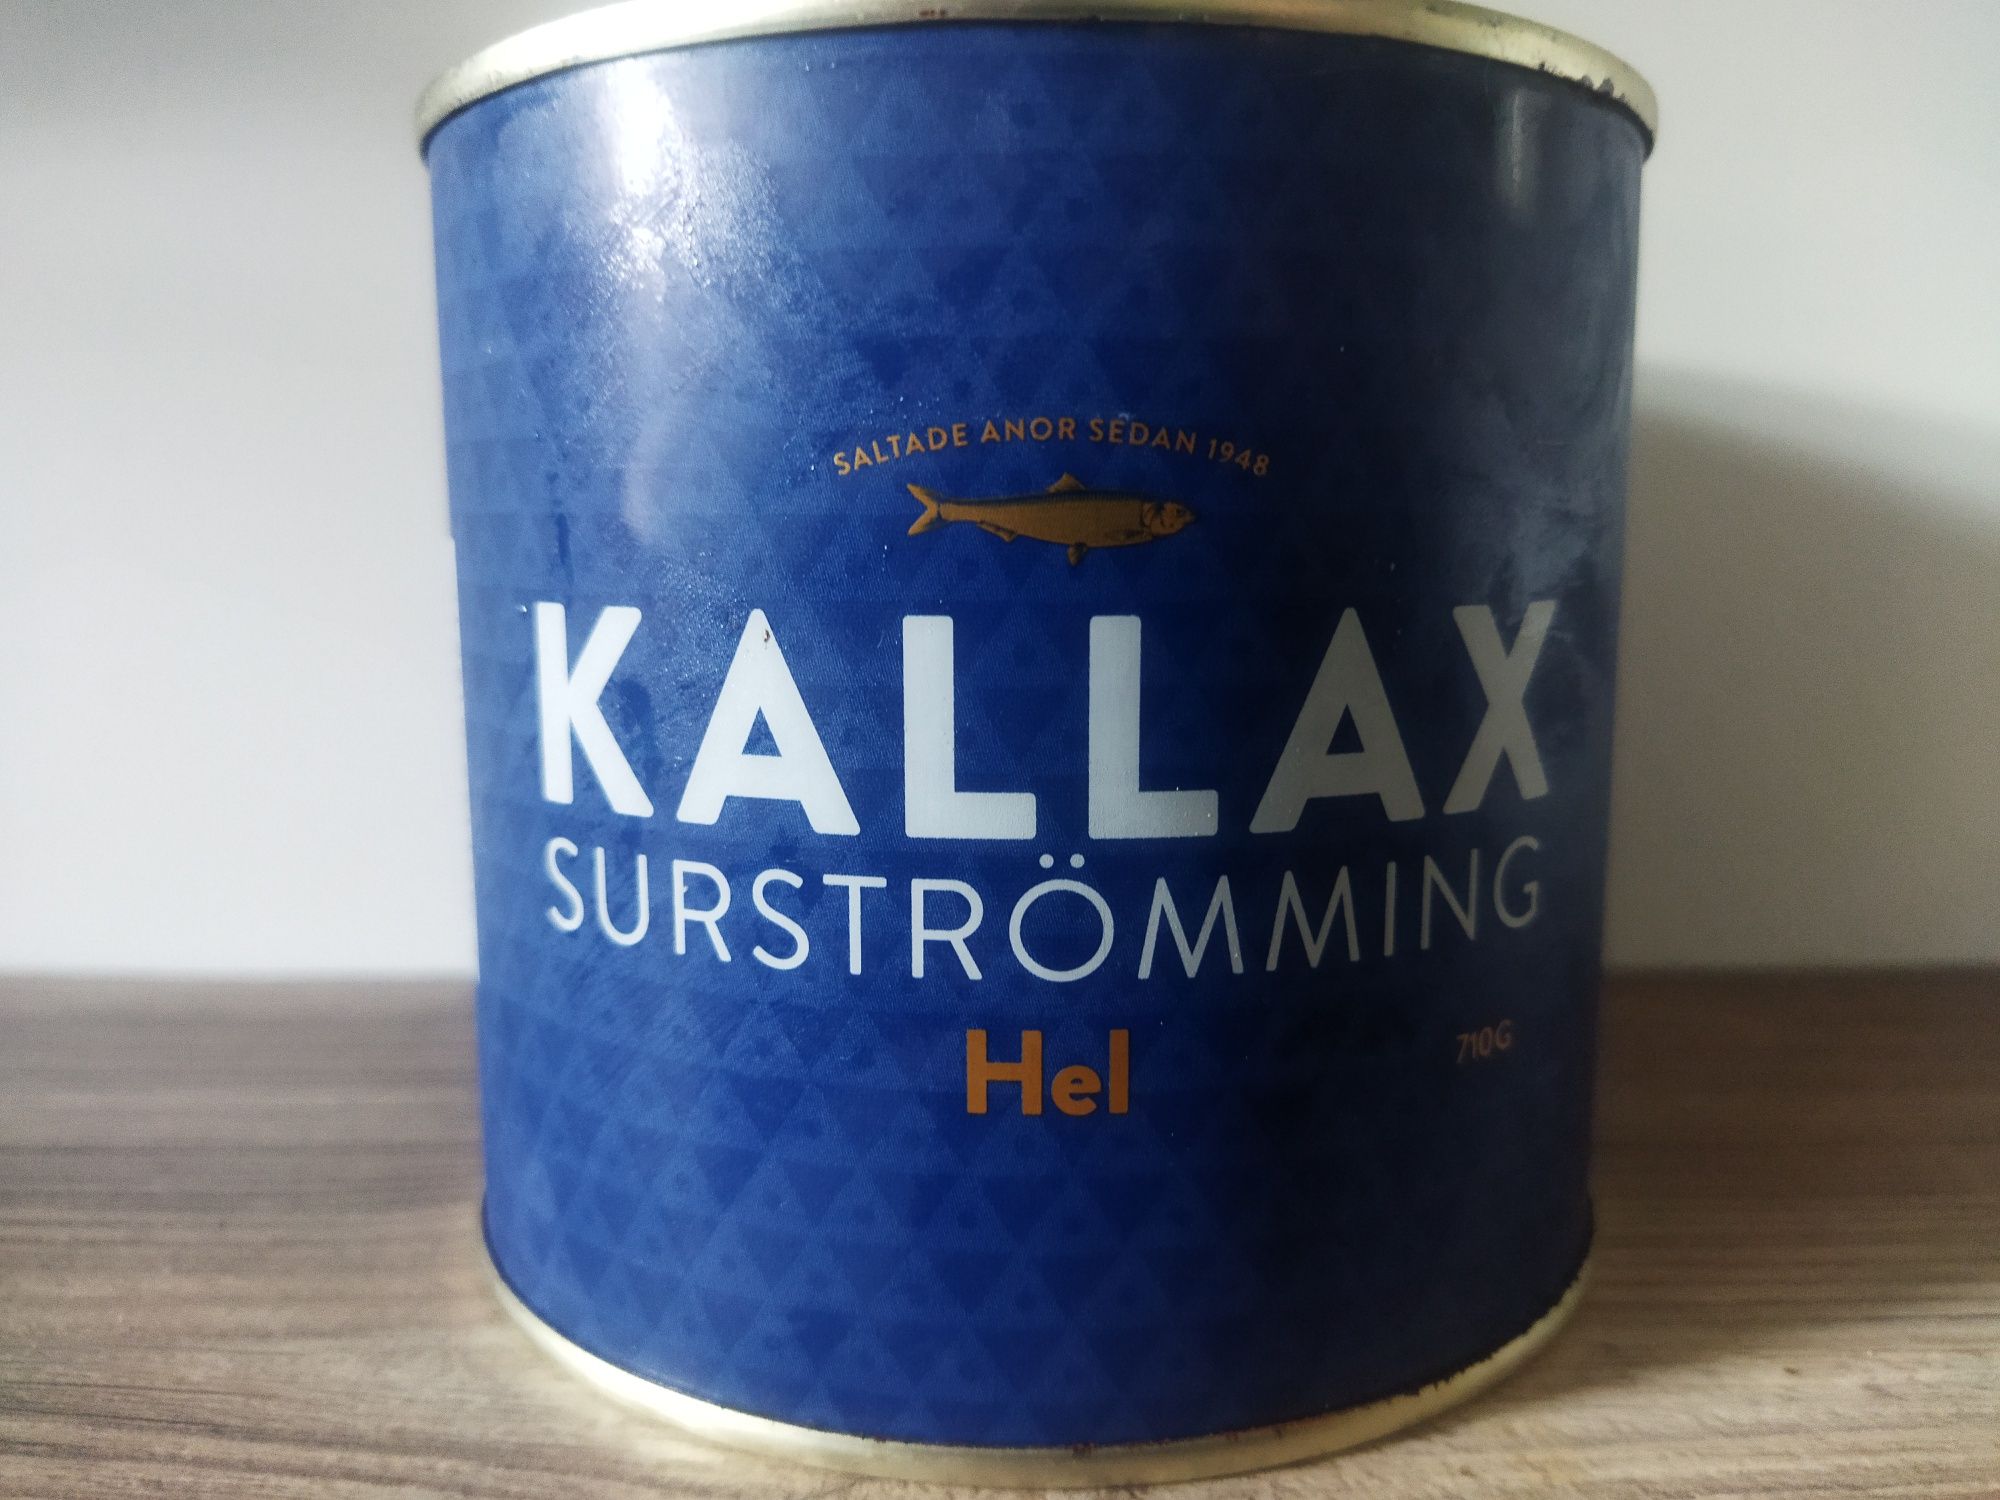 Surströmming - kiszony szwedzki śledź 710g DUŻA PUSZKA